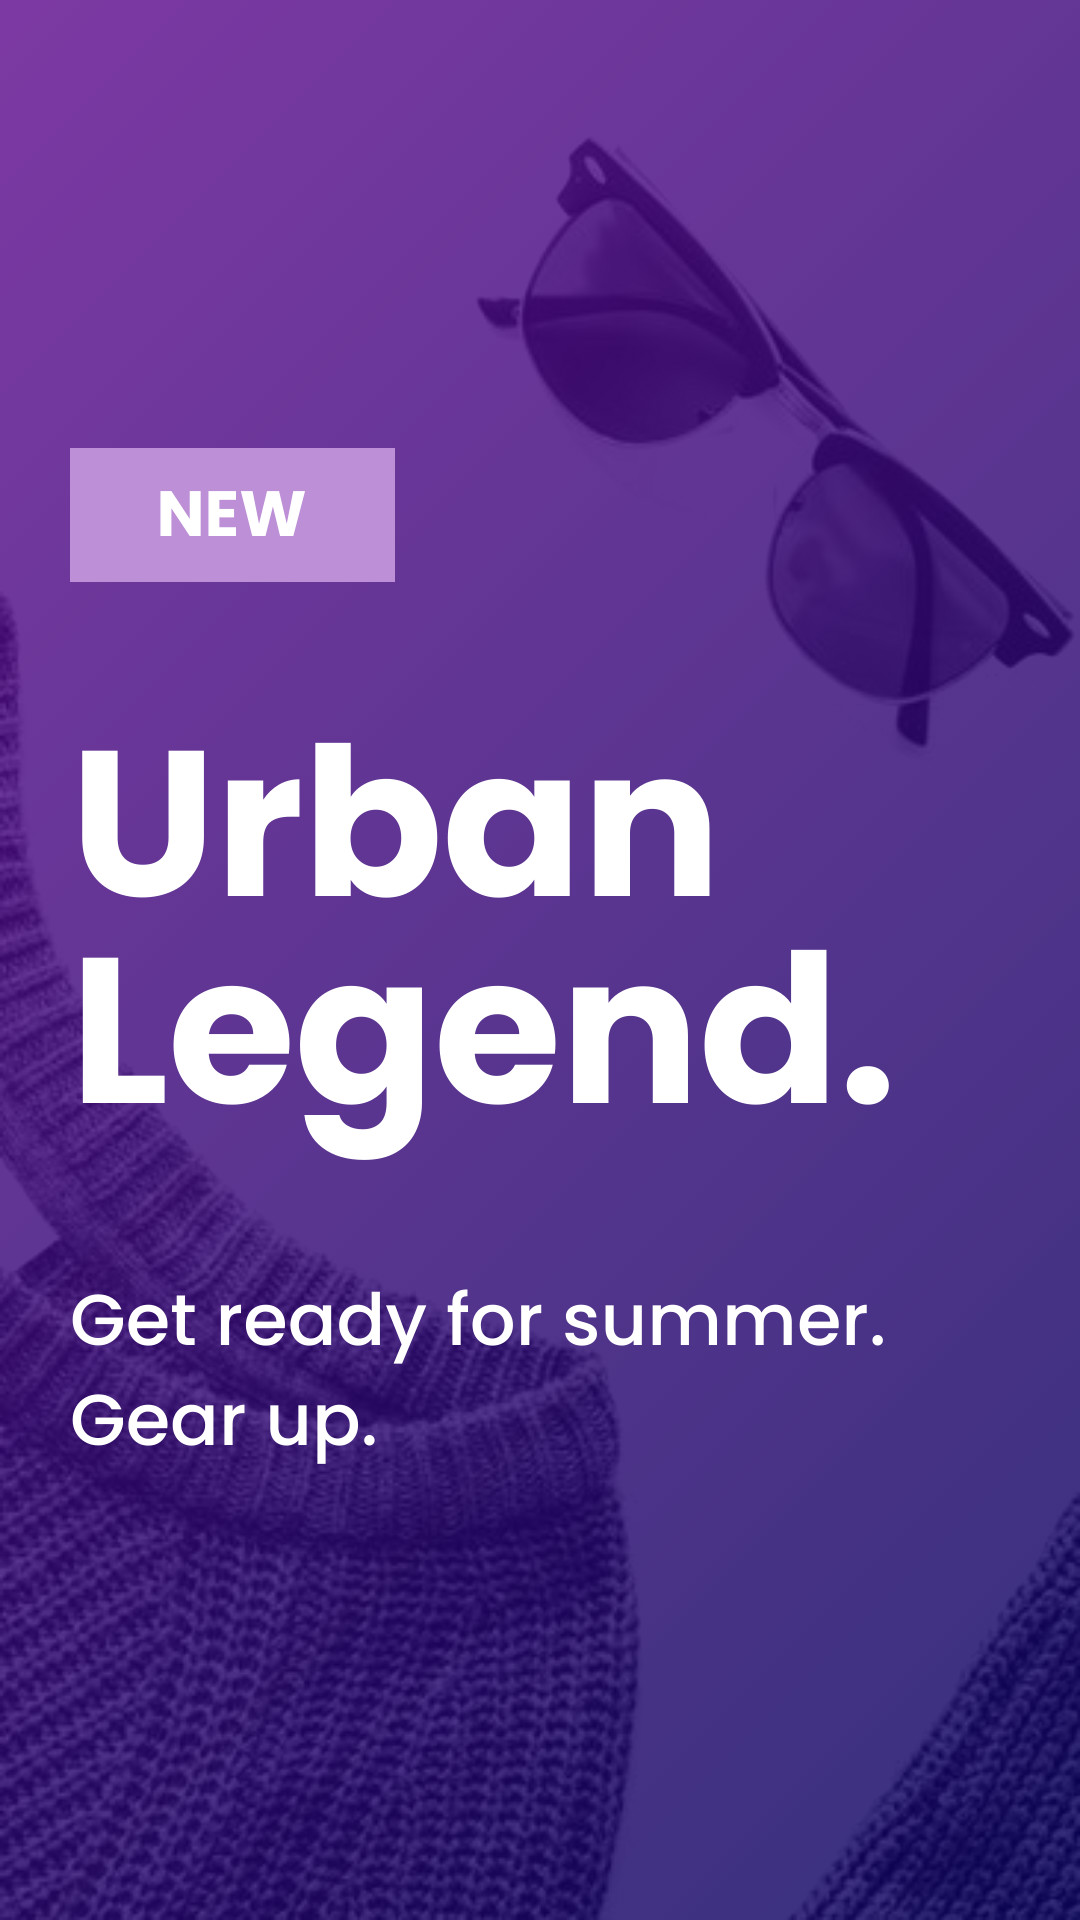 Urban Legend Gear Up Inline Rectangle 300x250